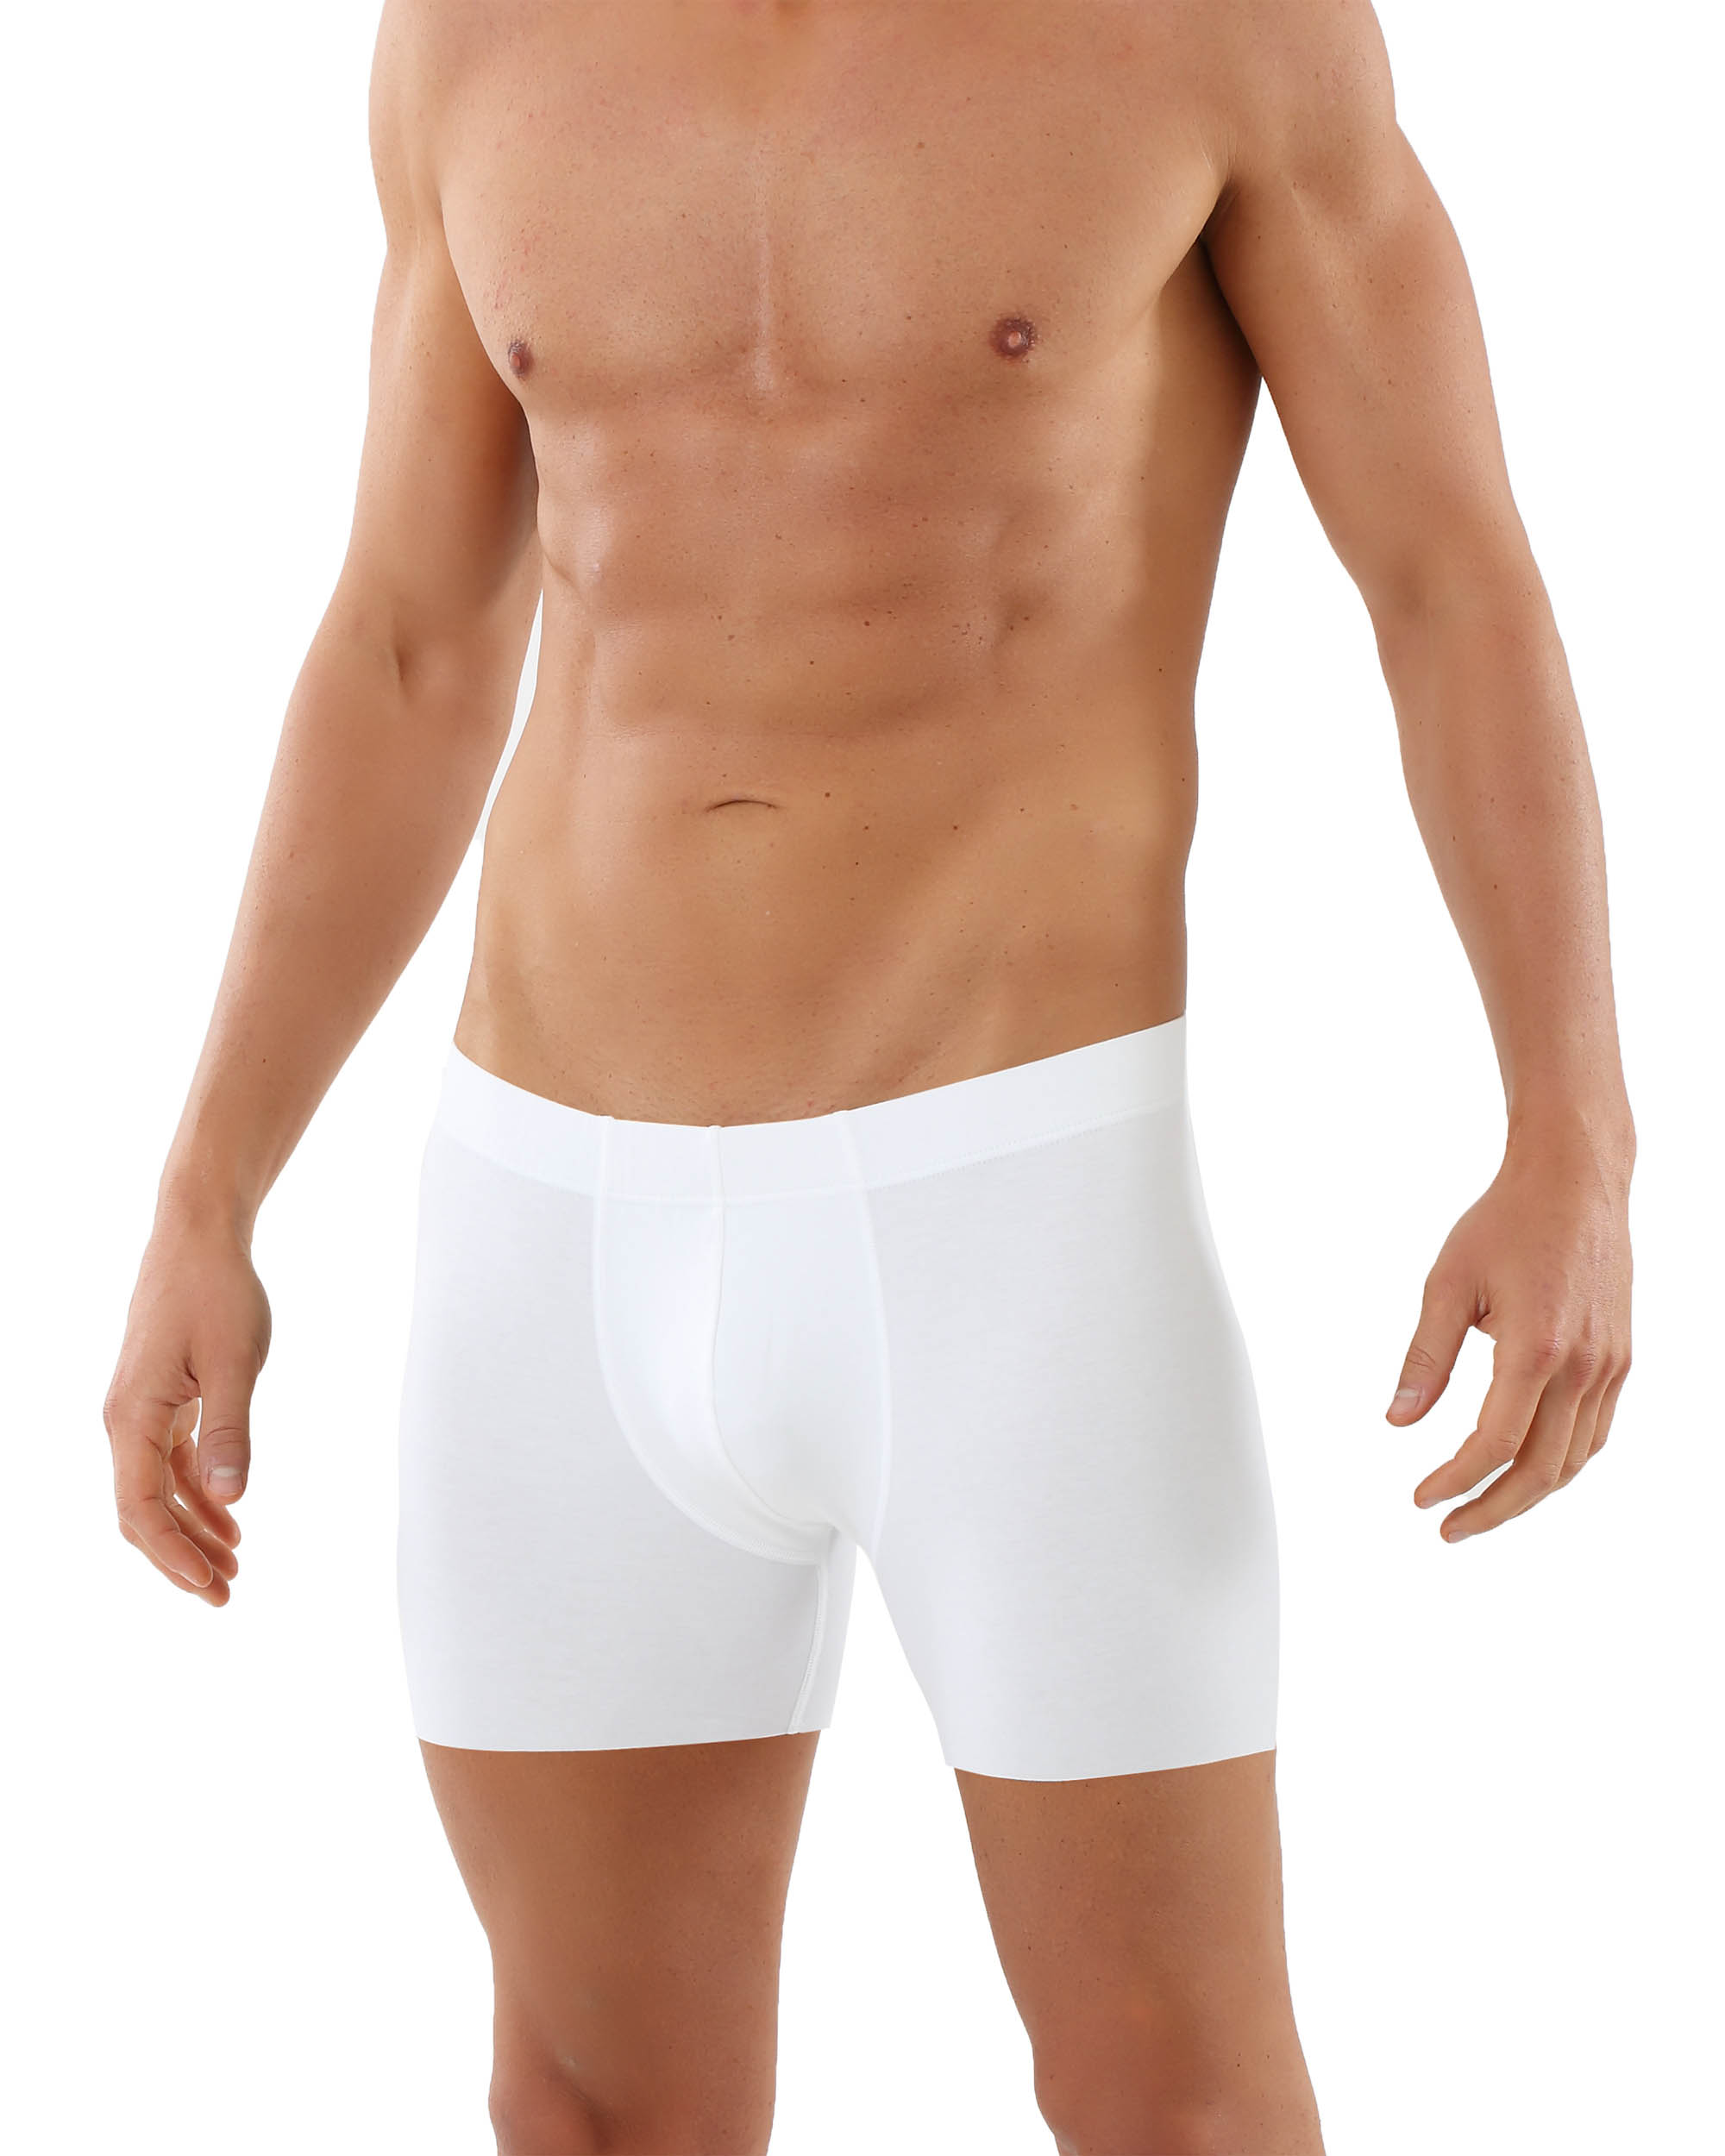 Plus Size Large Loose Male Cotton Underwear Boxers men High Waist